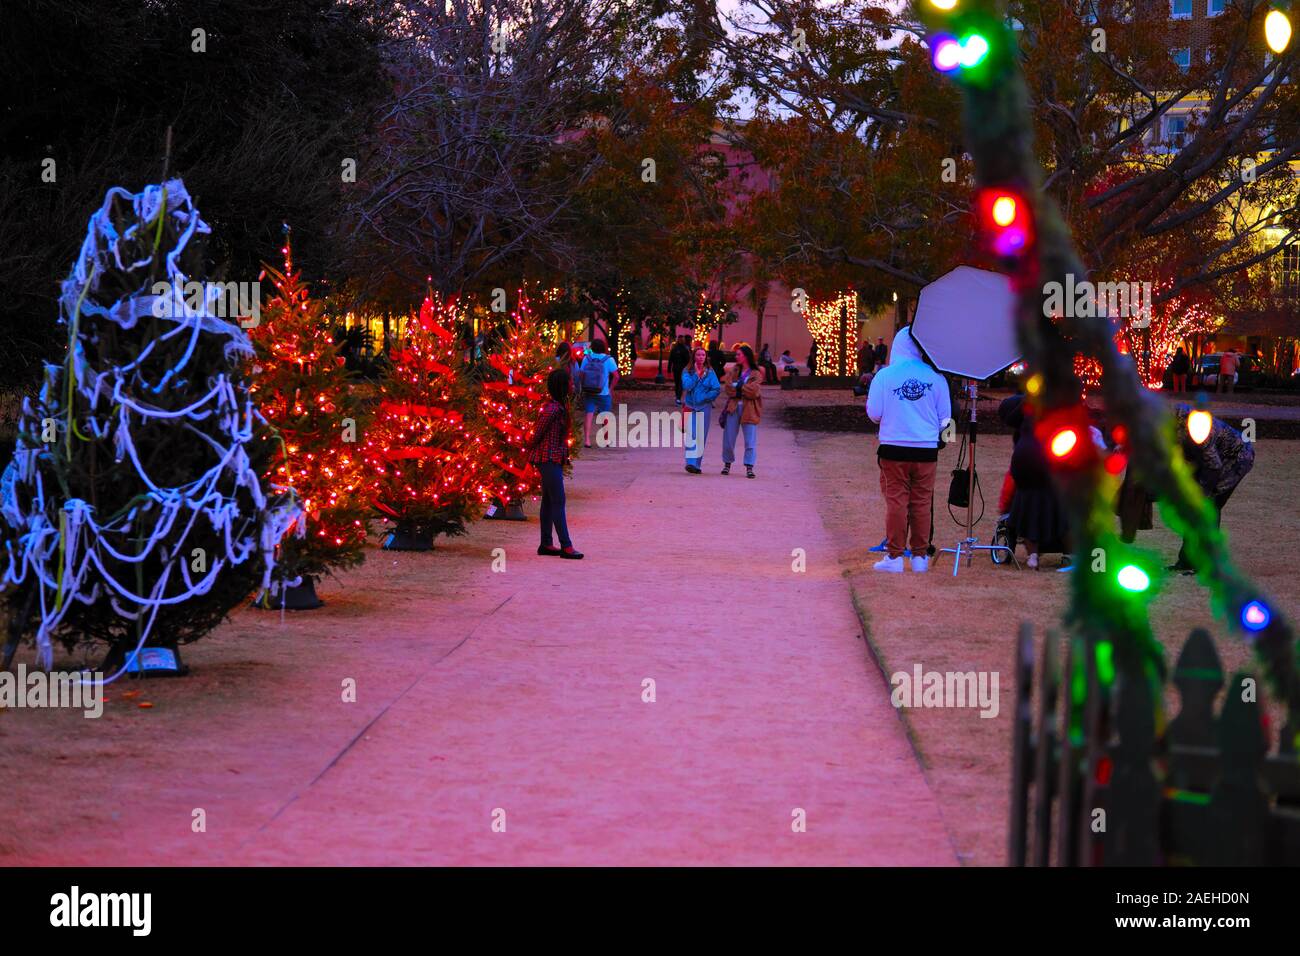 Weihnachtsbeleuchtung an einen öffentlichen Platz mit einem Pfade und Mehrfarbige Dekorative Leuchten und Weihnachtsbäume und Red Ribbon Bögen Stockfoto